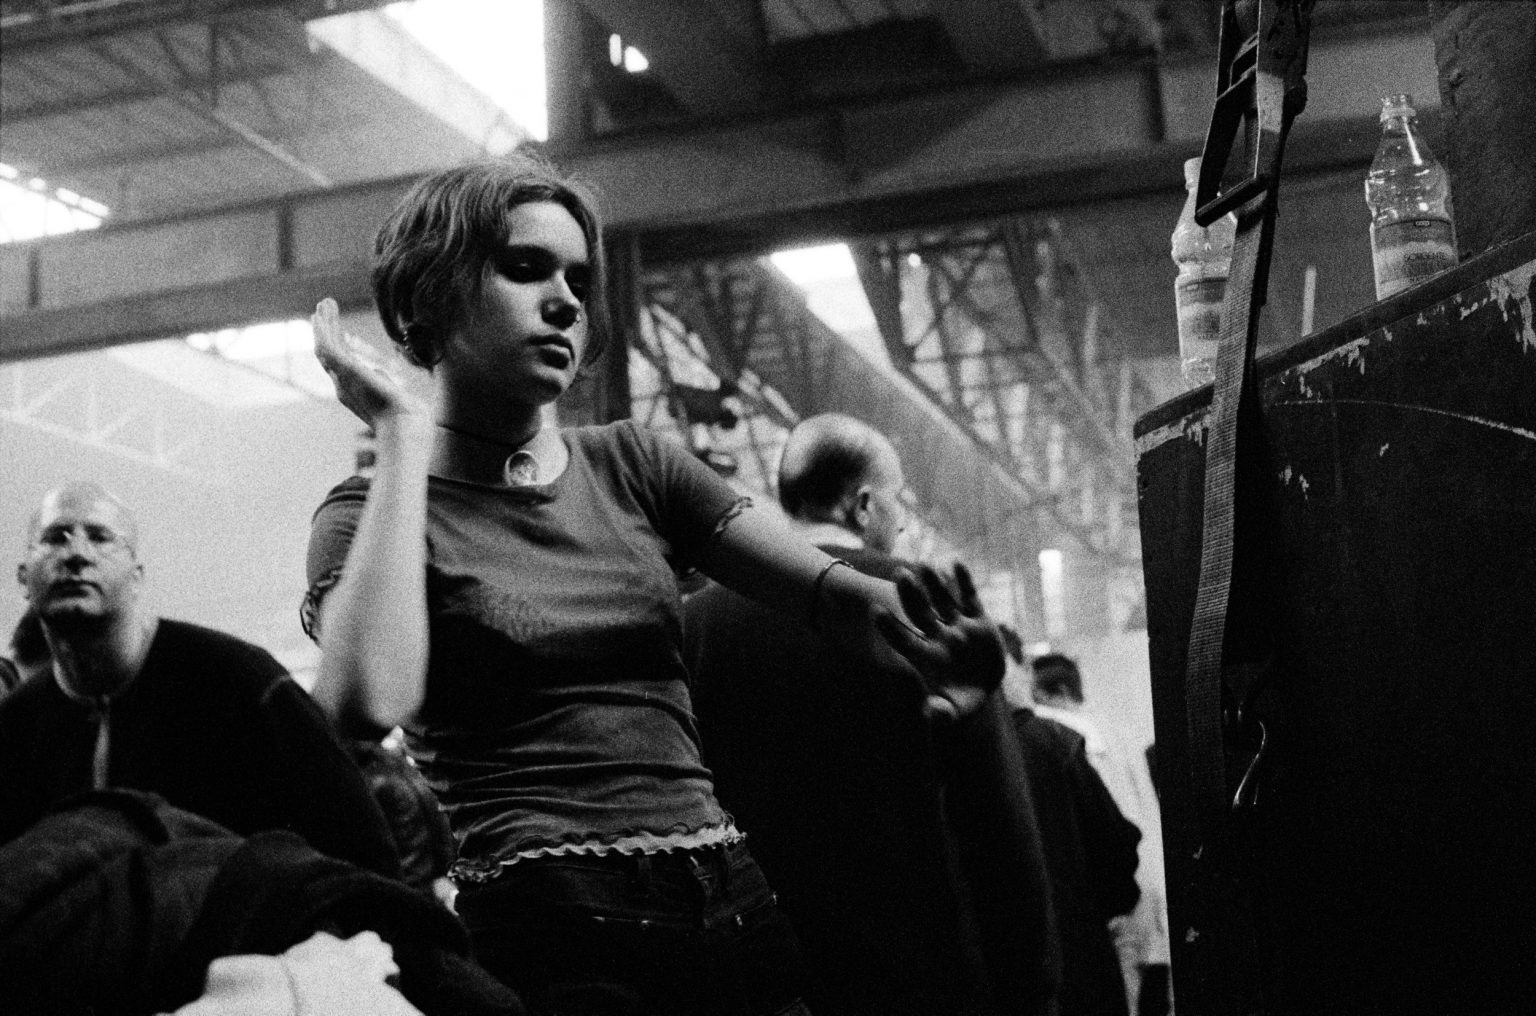 Bologna, 1997 - Girl Dancing at Centro Sociale Livello 57. ><
Bologna, 1997 - Una ragazza balla al Centro Sociale 1997.